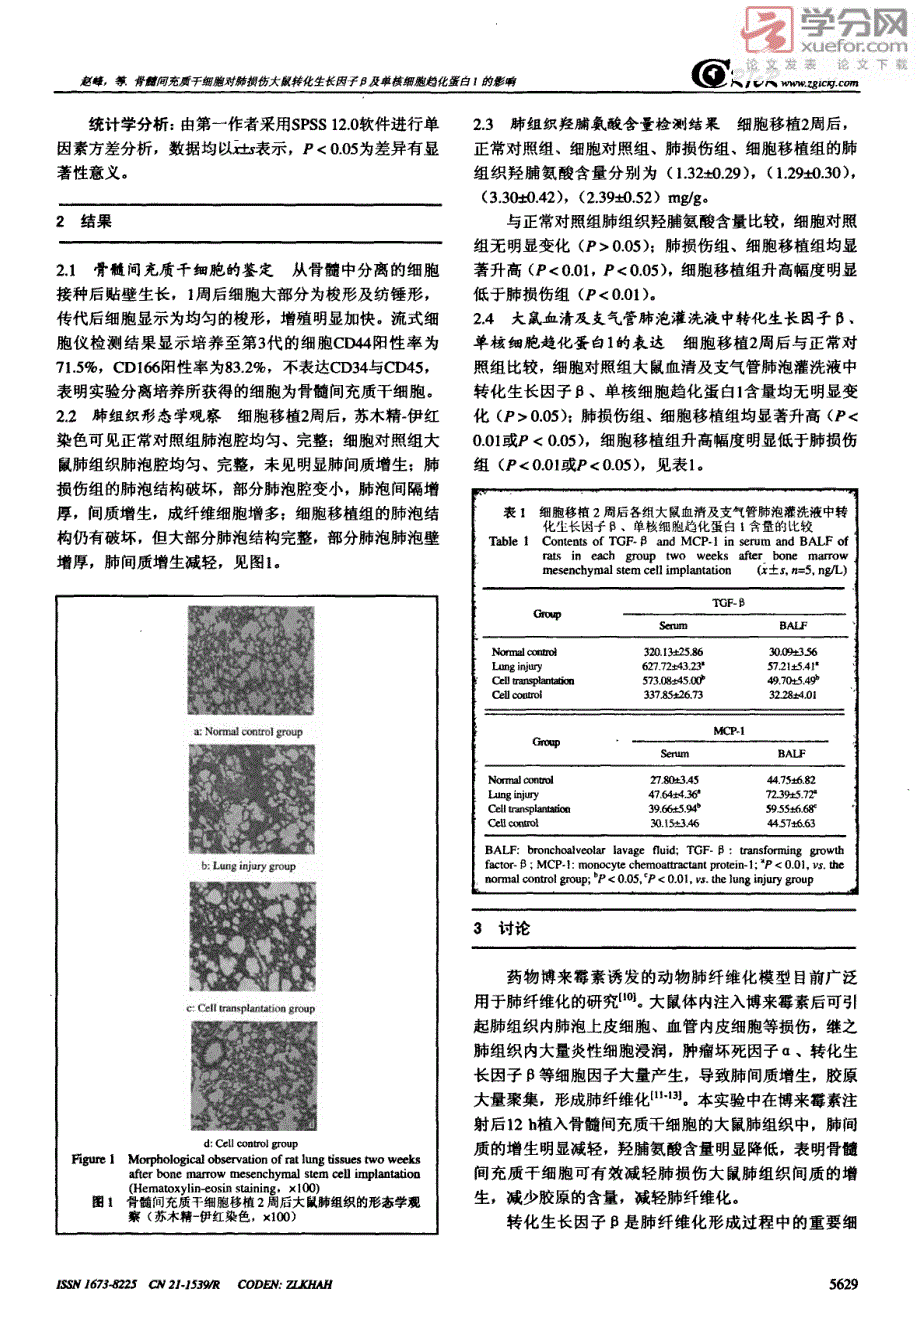 骨髓间充质干细胞对肺损伤大鼠转化生长因子β及单核细胞趋化蛋白1的影响_第3页